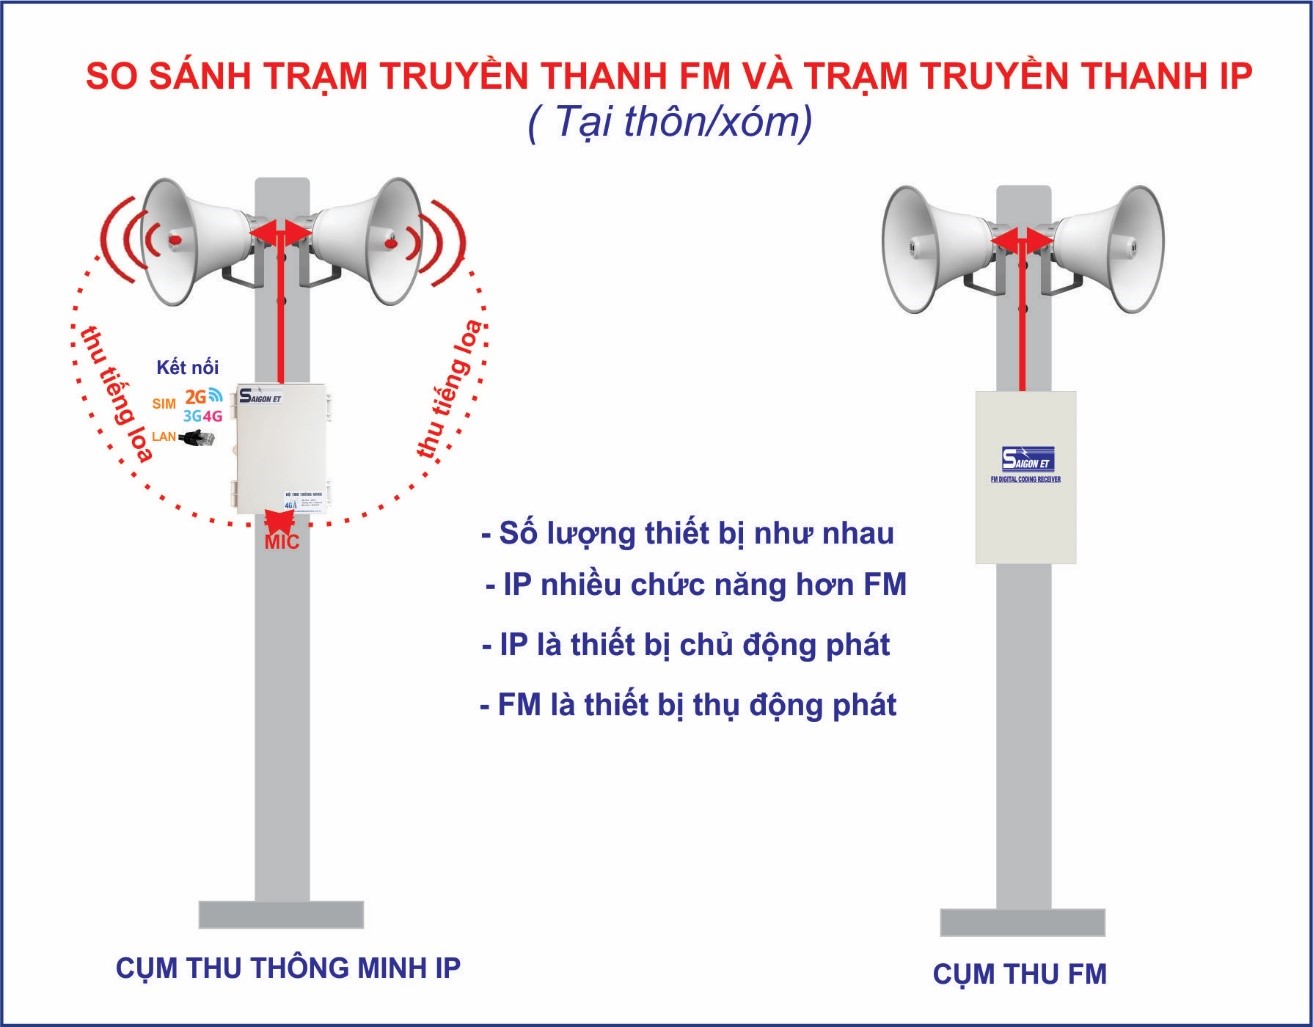 He Thong Truyen Thanh Thong Minh Ip 4g